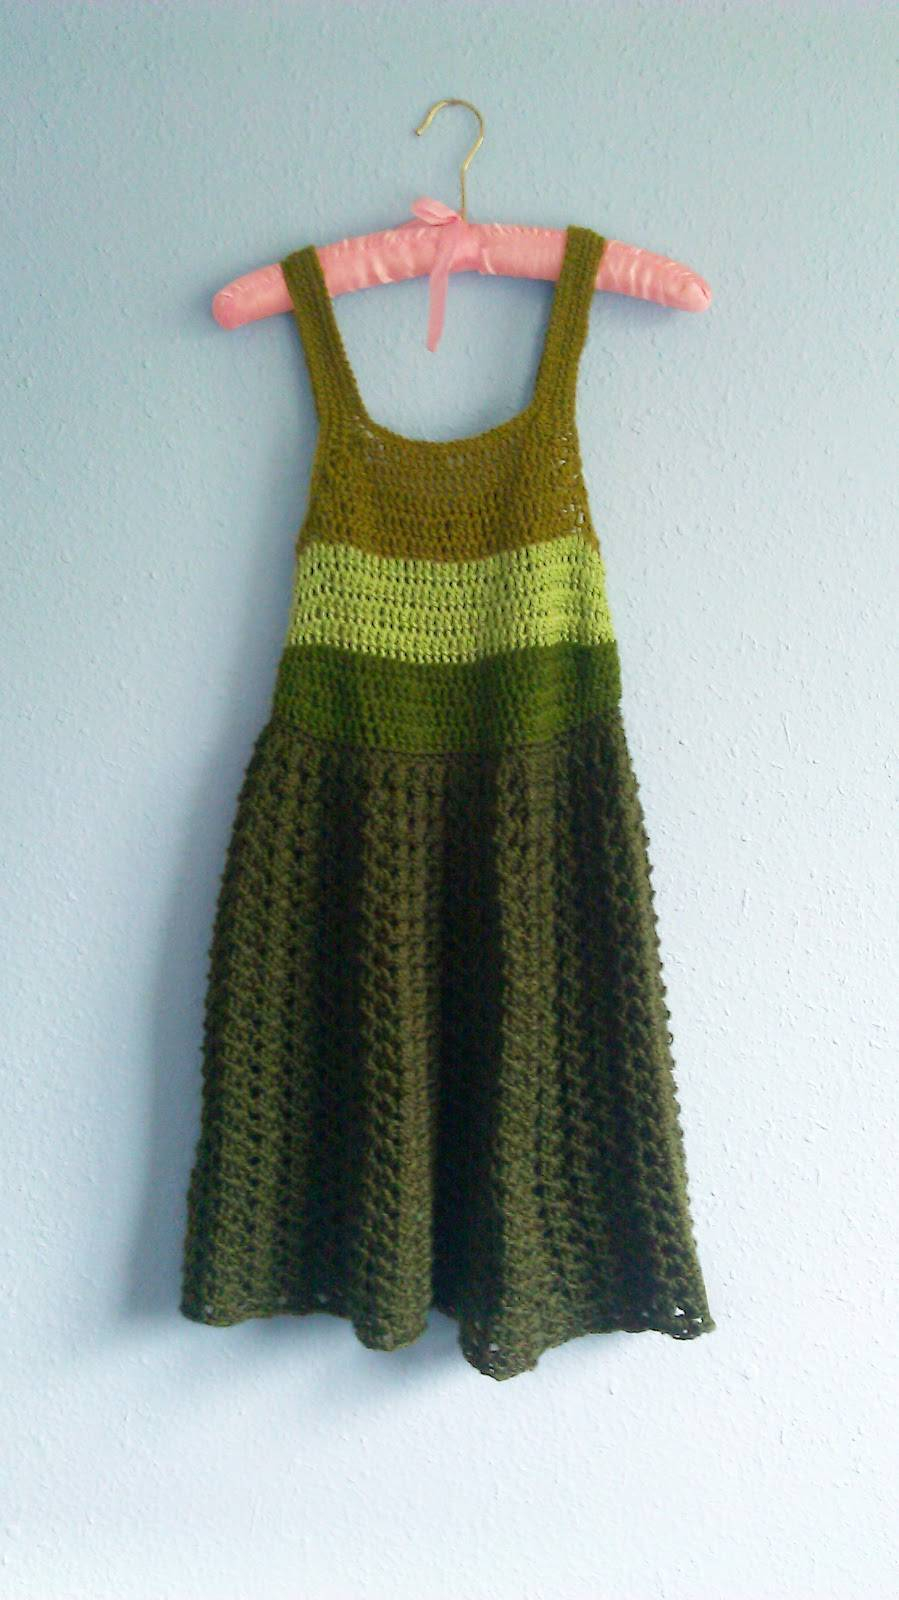 Crochet Lingerie Patterns 15 Beautiful Free Crochet Dress Patterns For Women Crochet